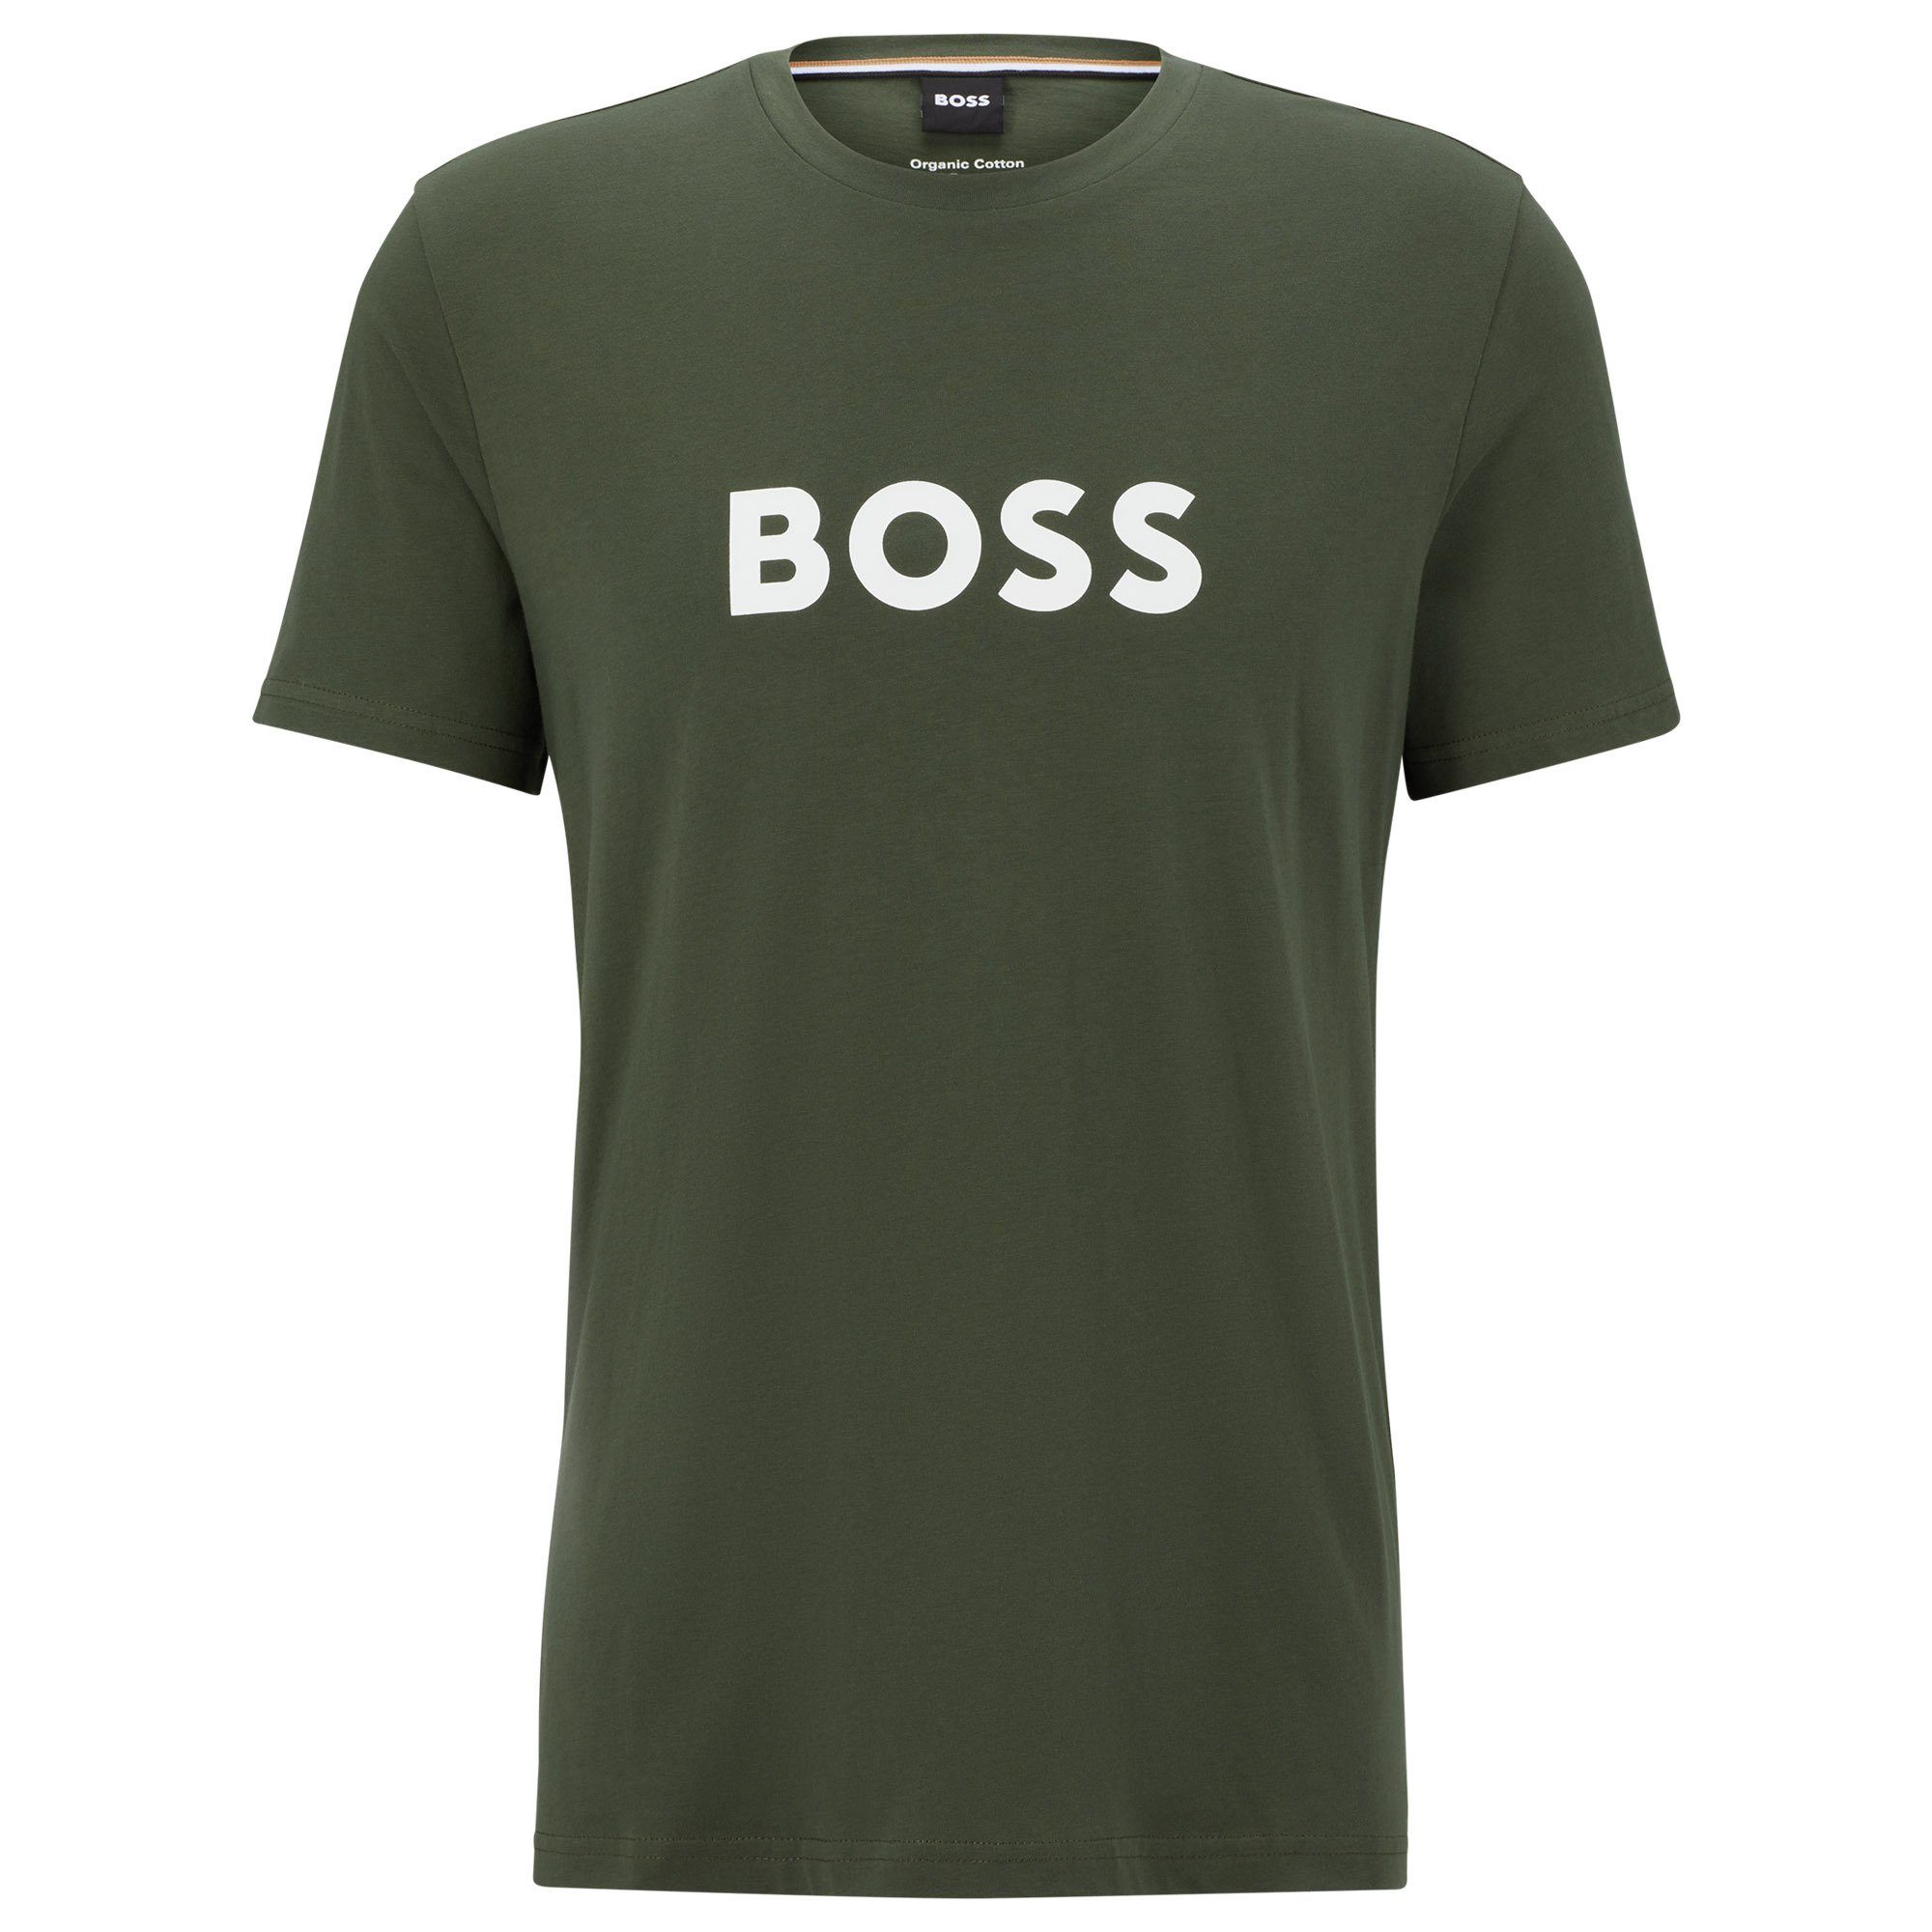 BOSS T-Shirt Herren - T-Shirt RN, Dunkelgrün T-Shirt Rundhals, Kurzarm